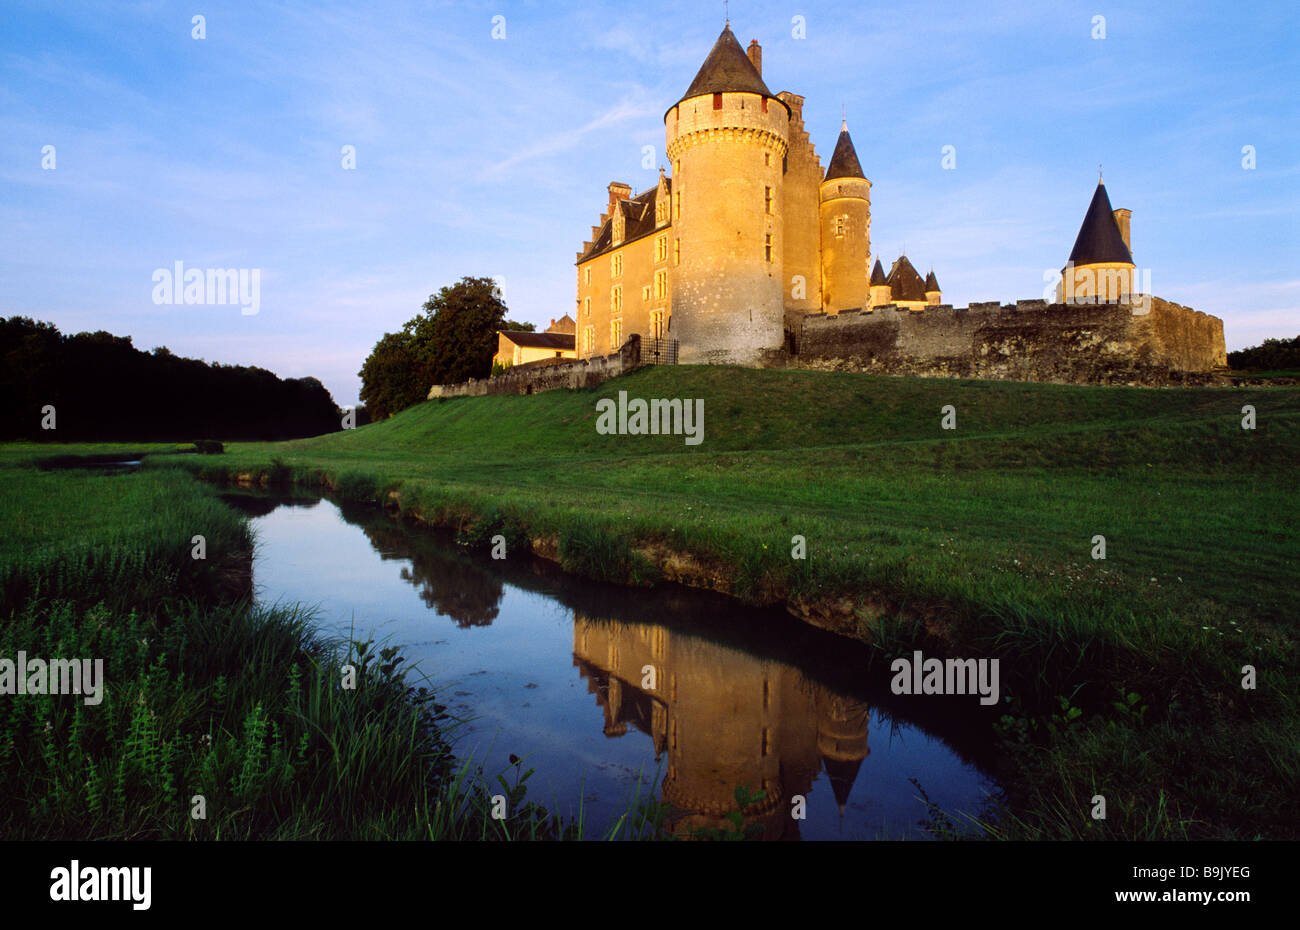 France, Indre et Loire, Cere la Ronde, Chateau de Montpoupon built between 13th and 15th century, shelters Musee de la Venerie Stock Photo